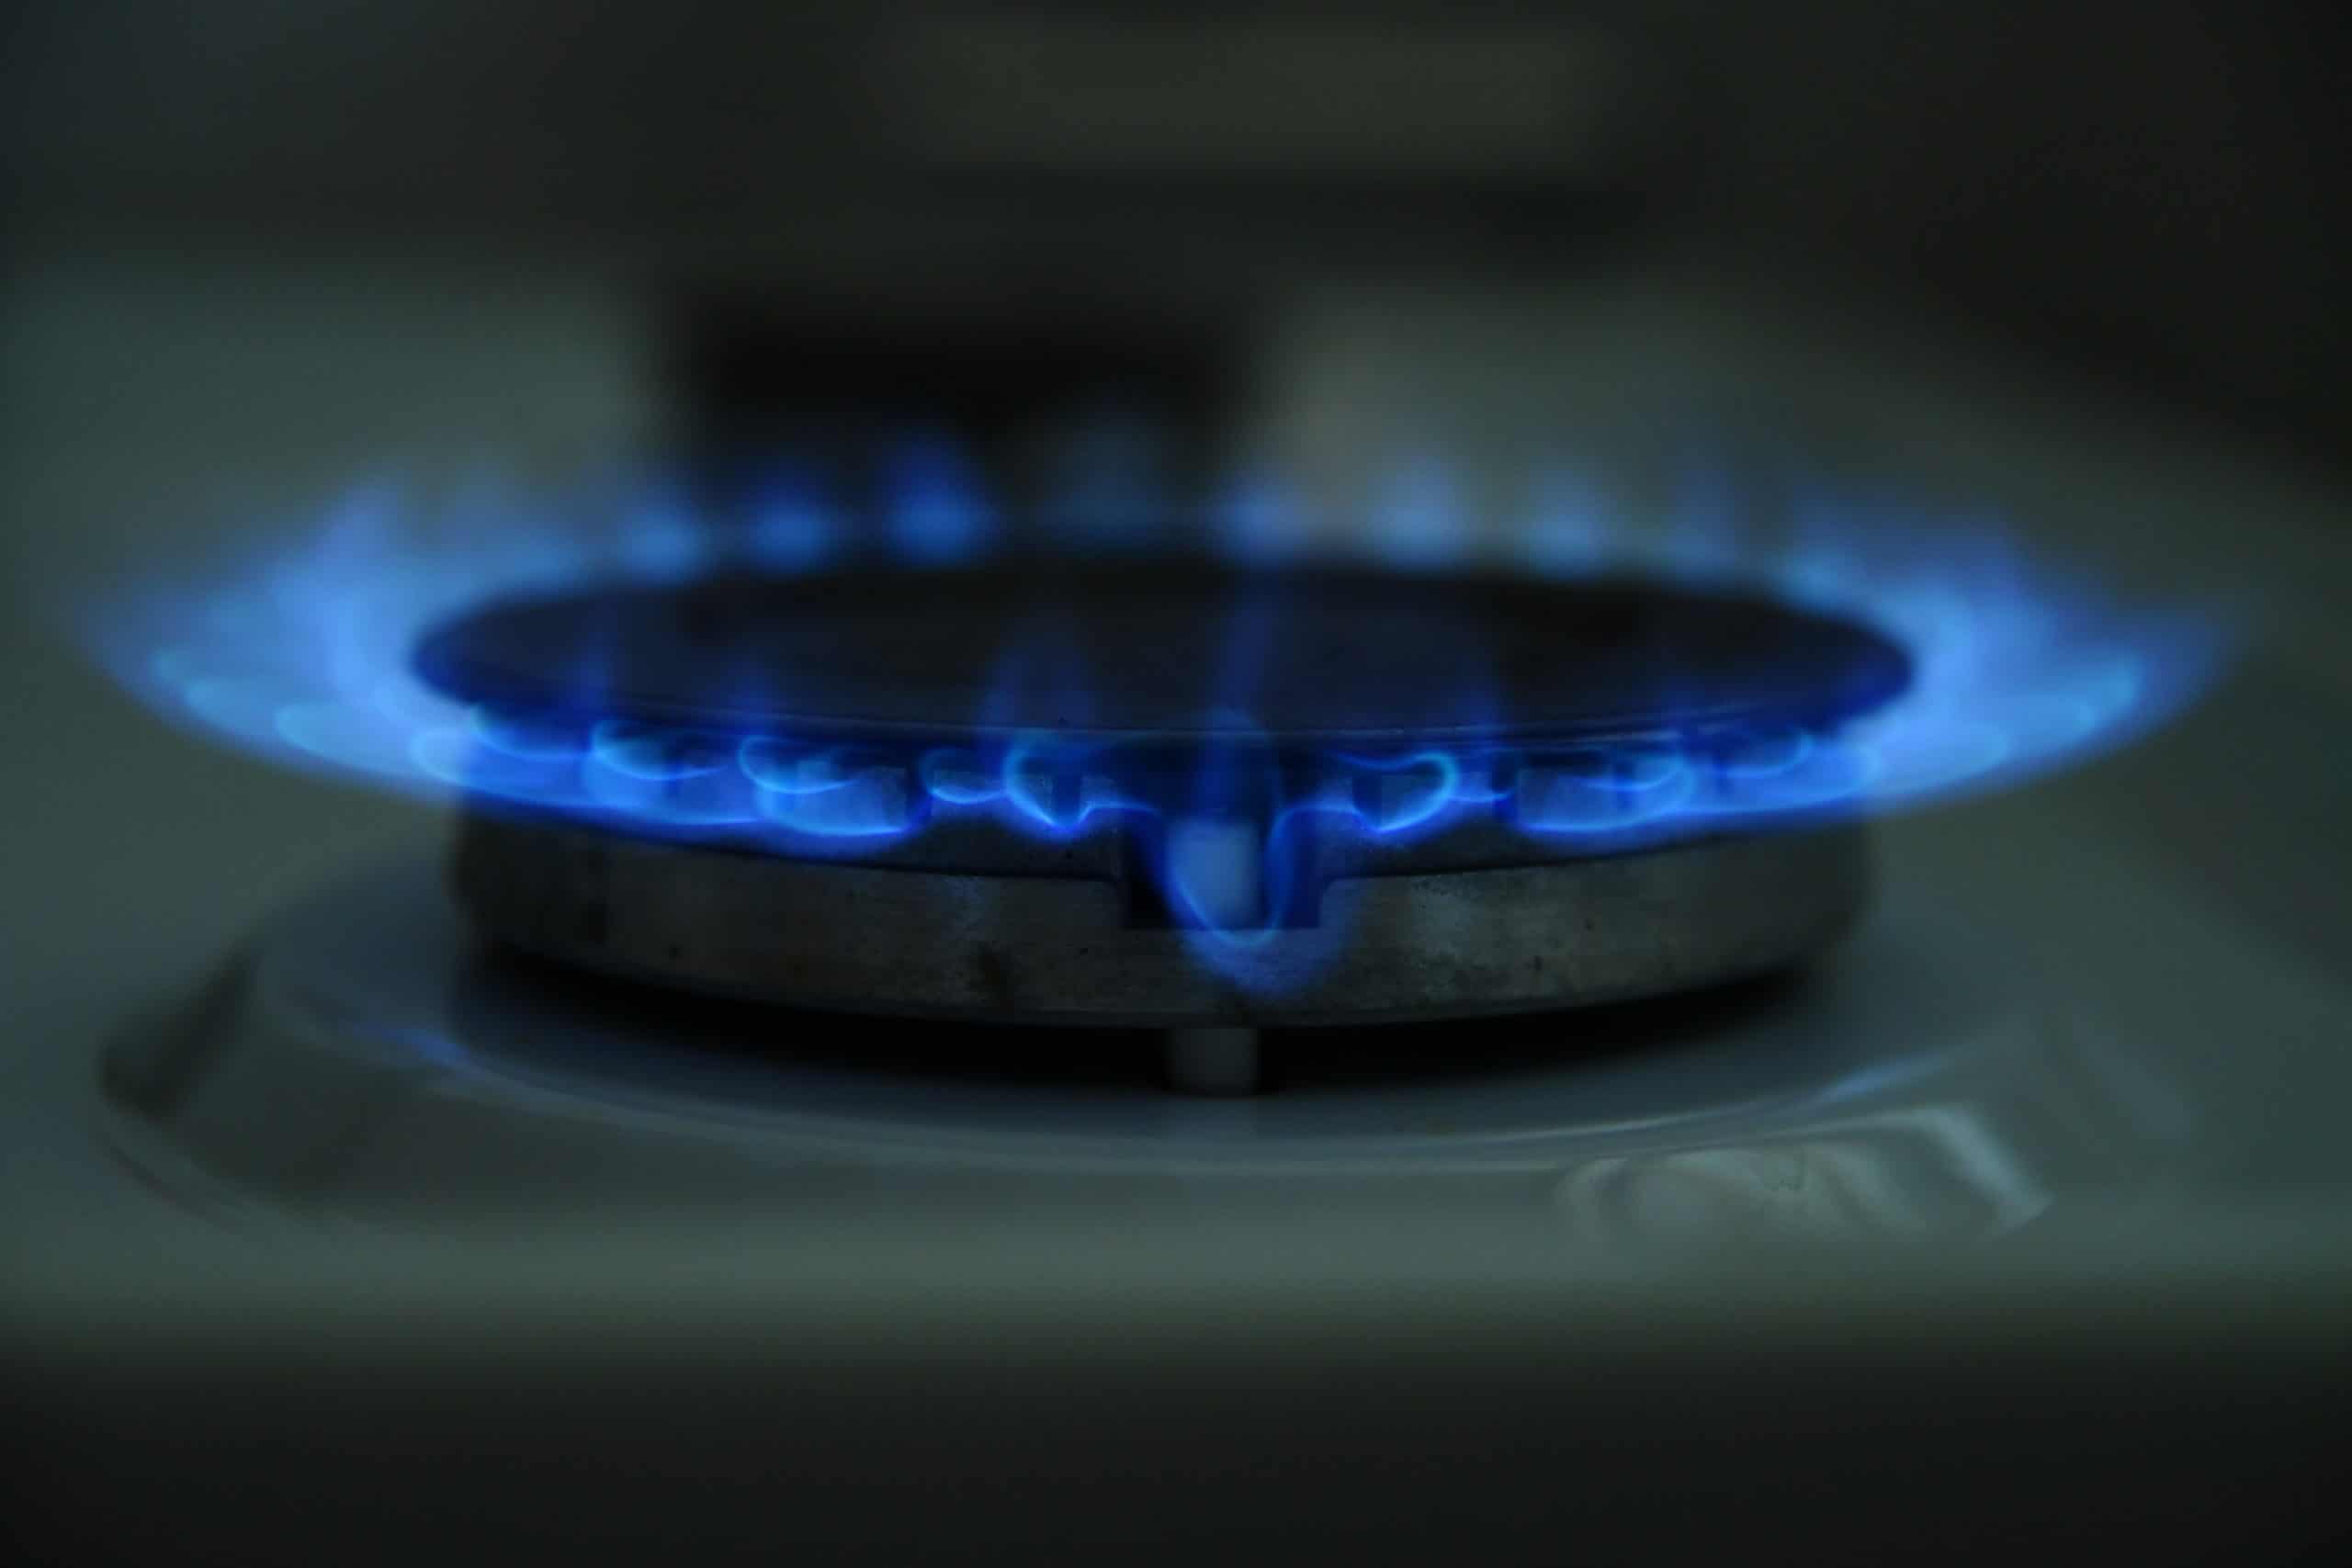 Южным областям ограничили подачу газа из-за нехватки ресурсной базы Узбекистана